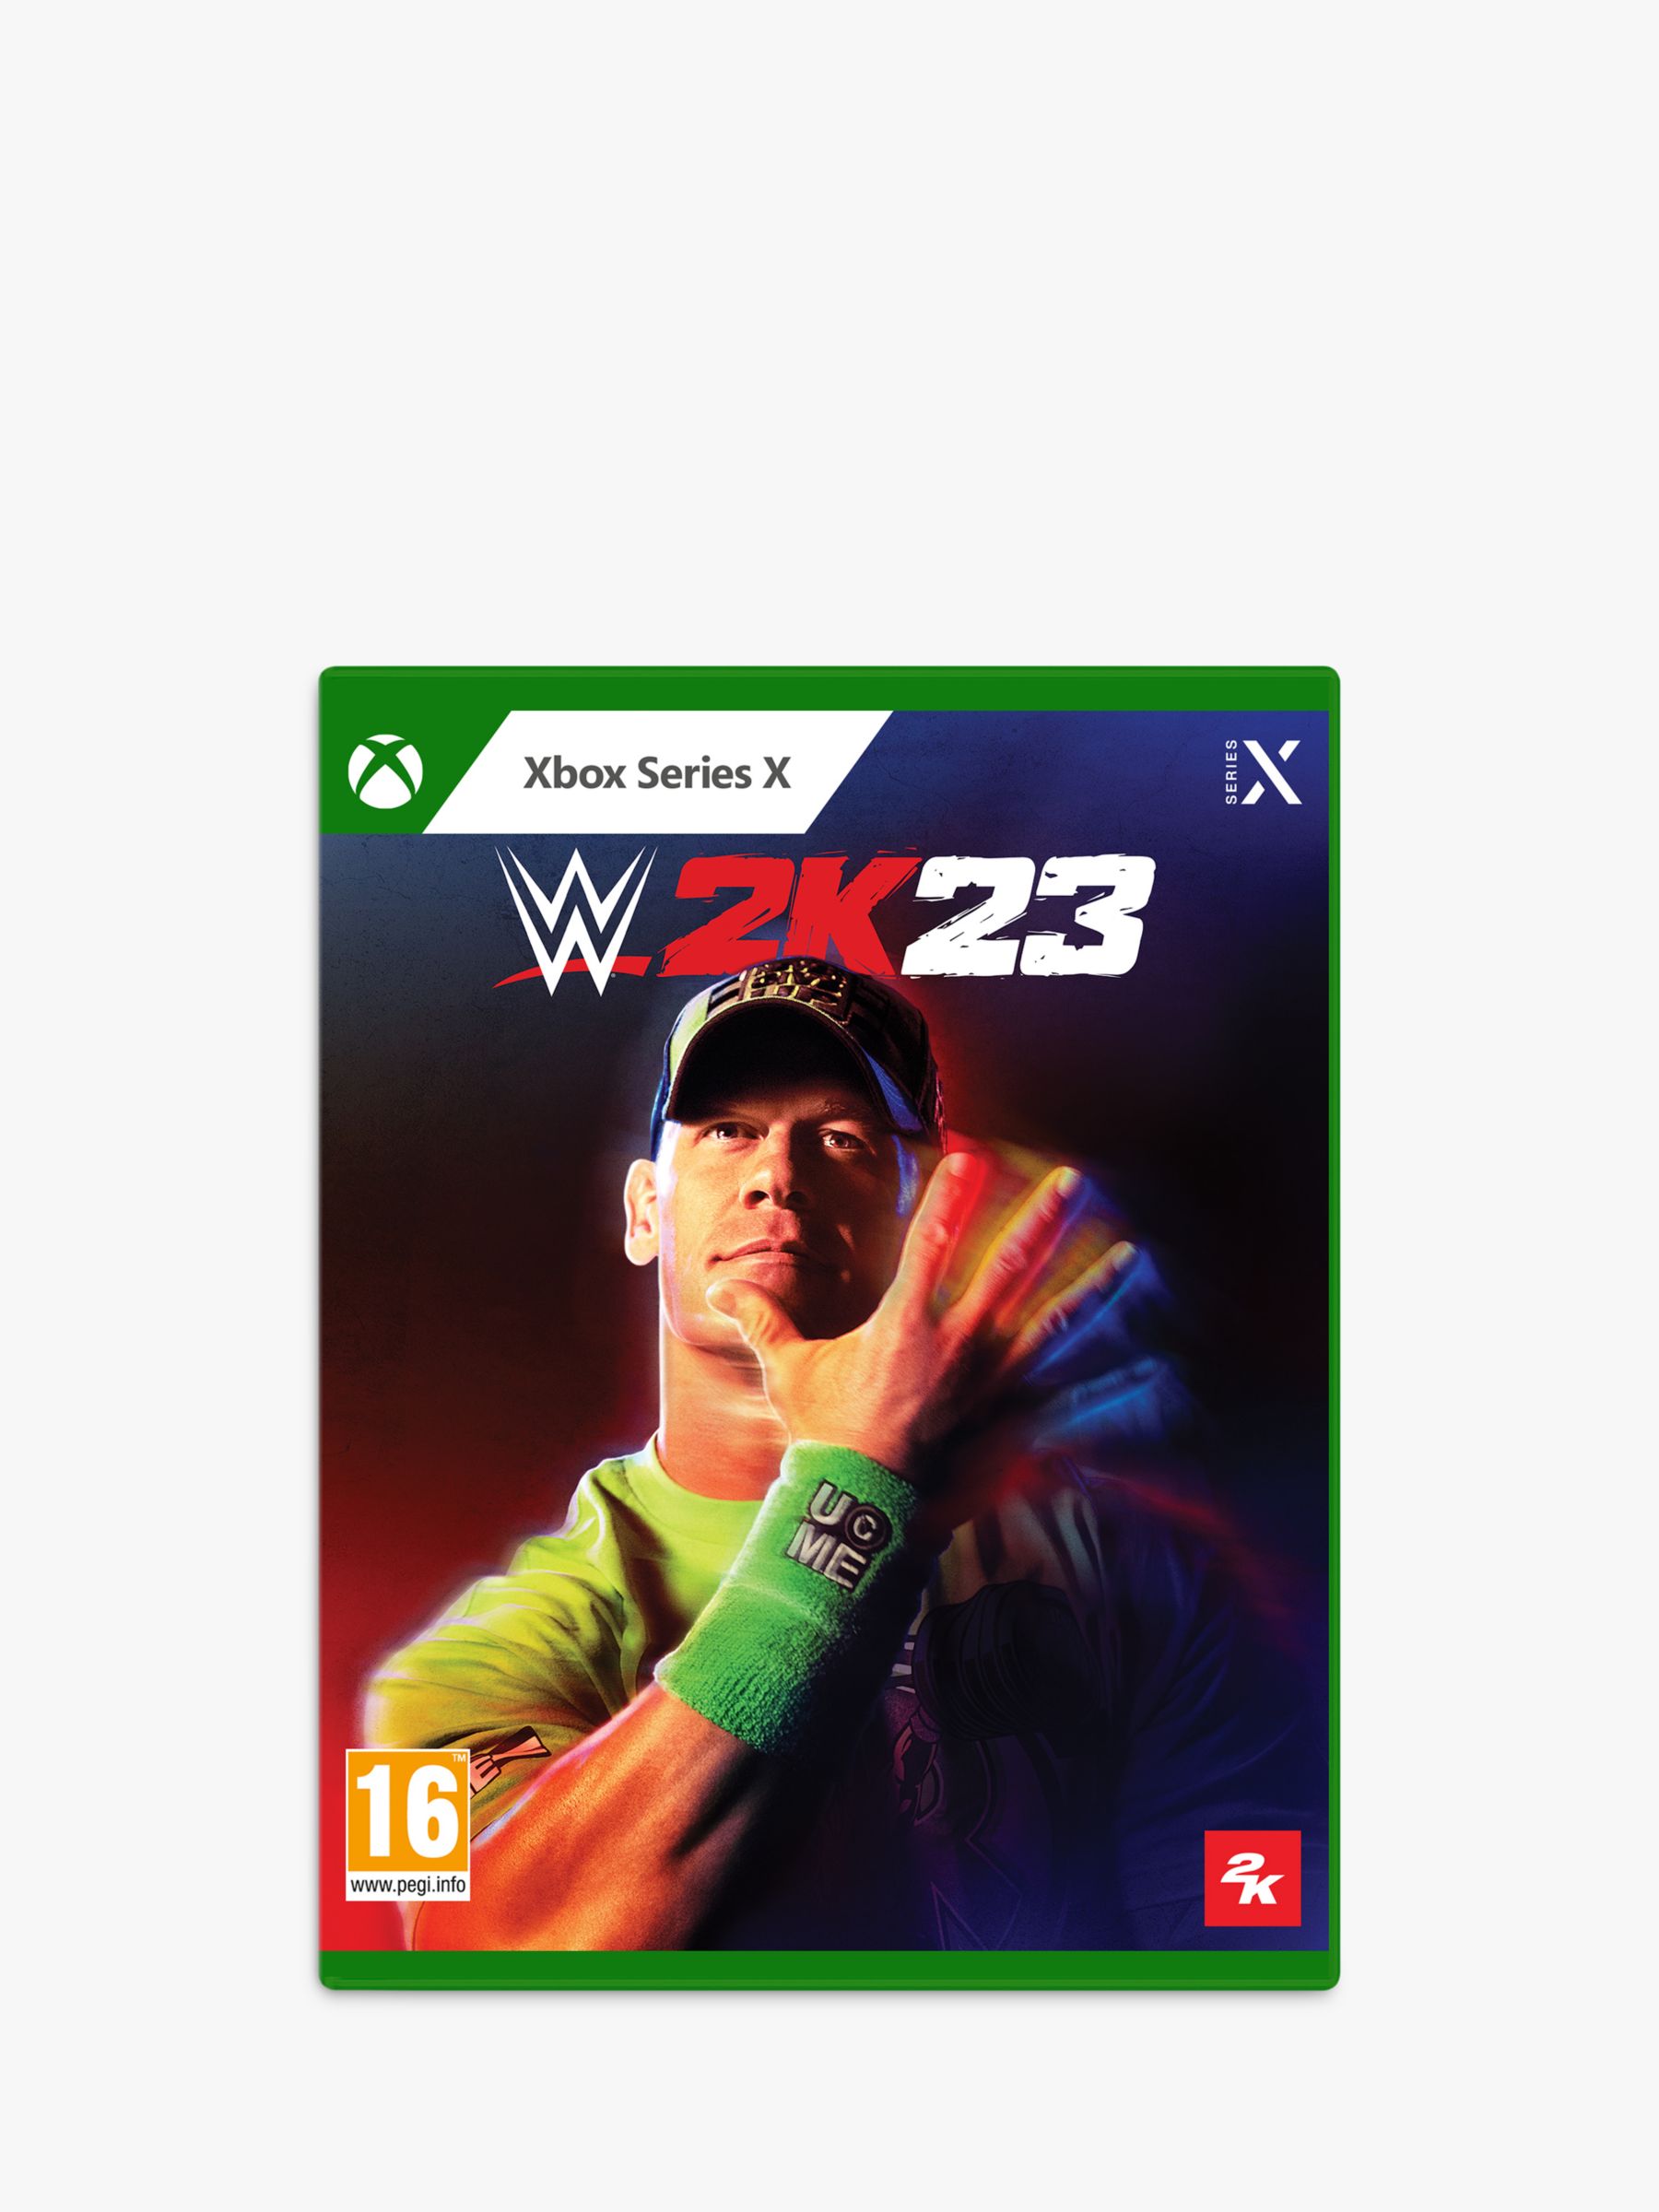 Wwe 2k22 - Padrão - Xbox Series X